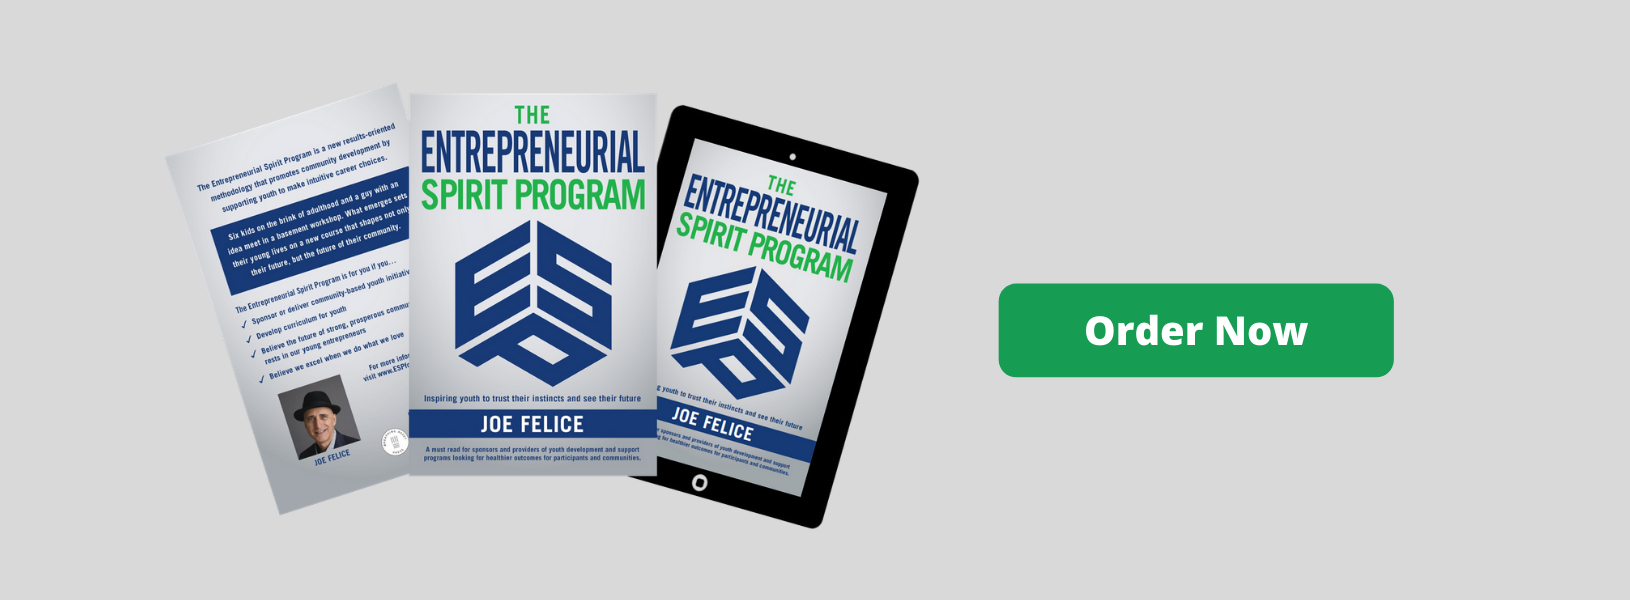 Entrepreneurial Spirit Program Book - Order Now